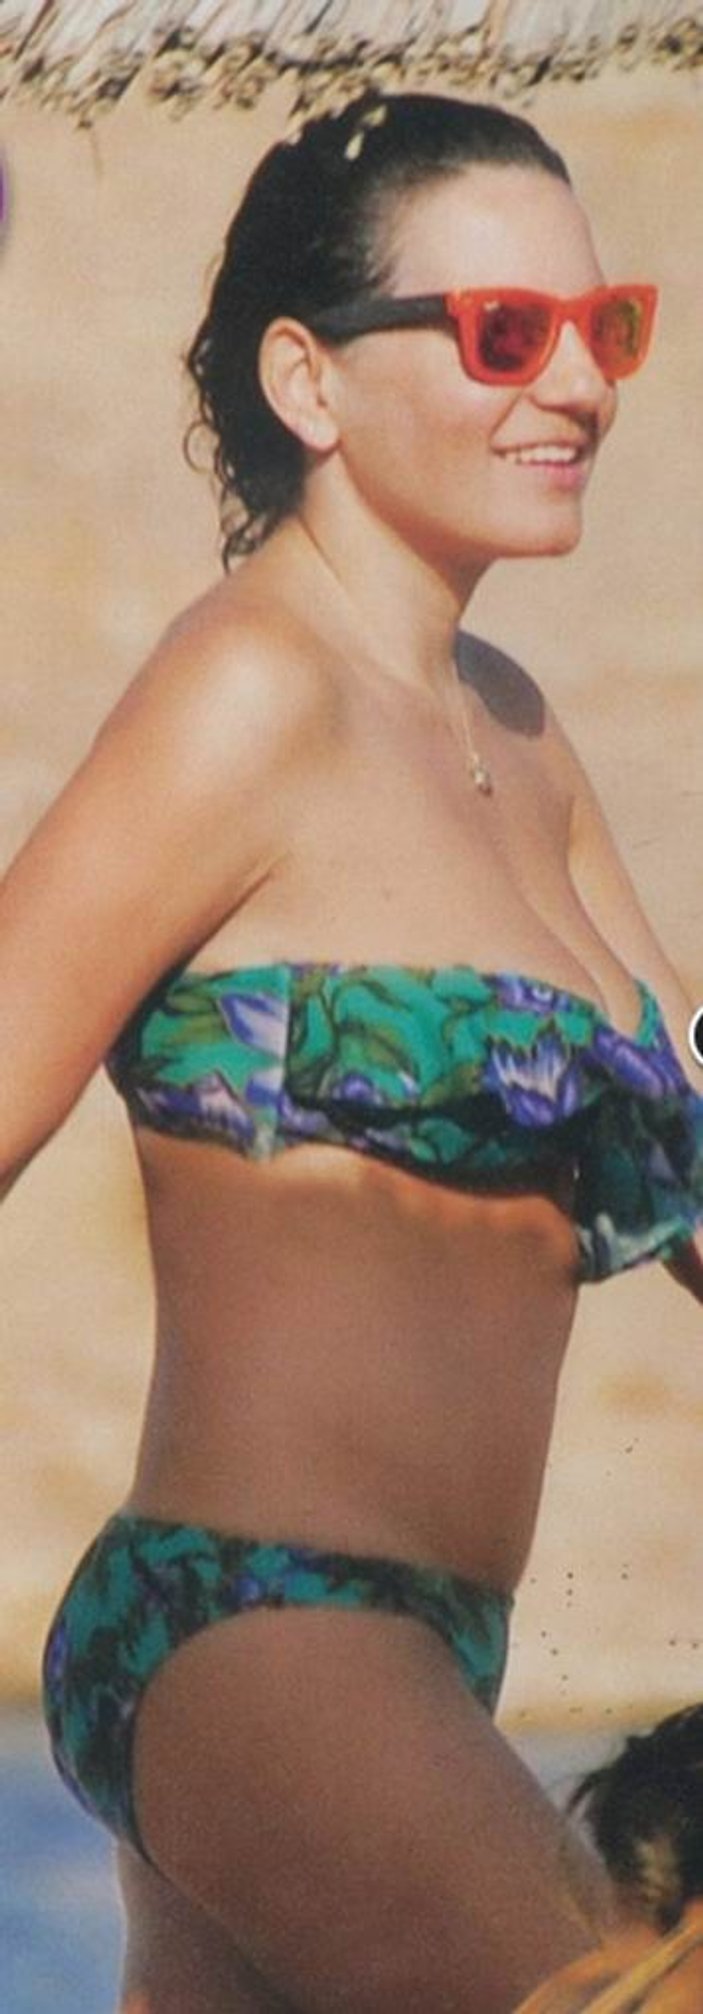 Yunan Bakan Olga Kefaloyani bikinisiyle yakalandı